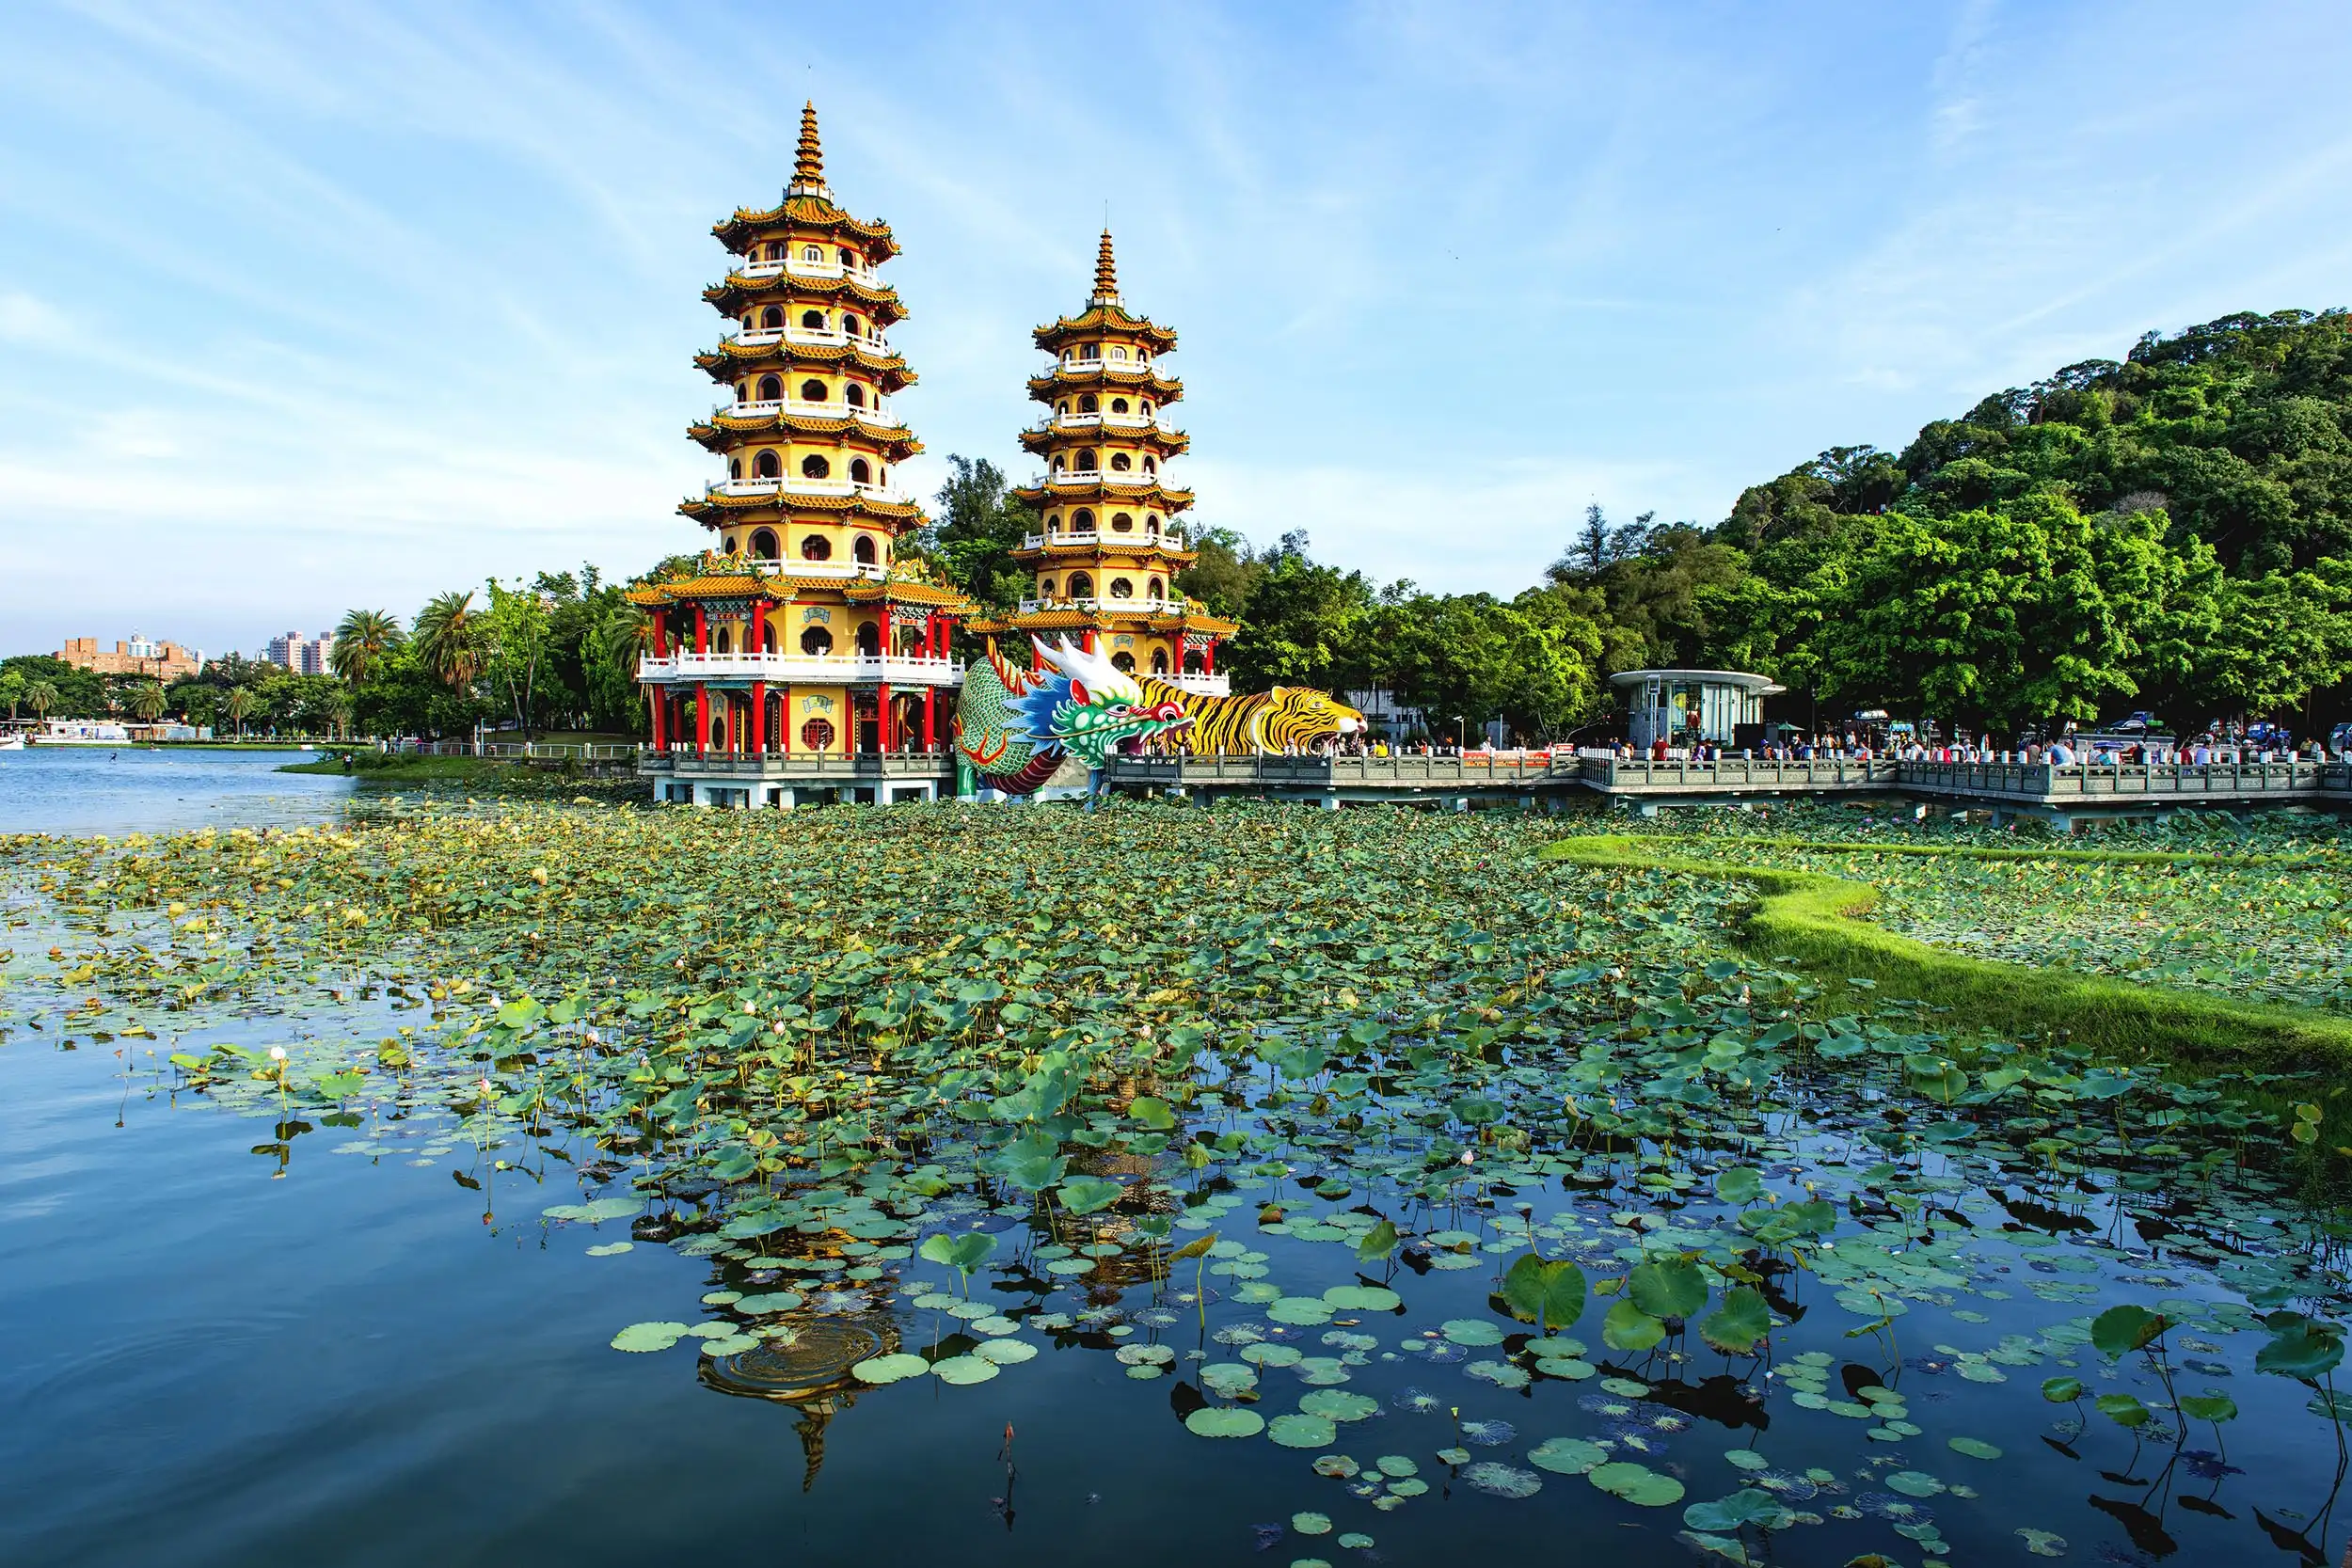 Yangmei tourism